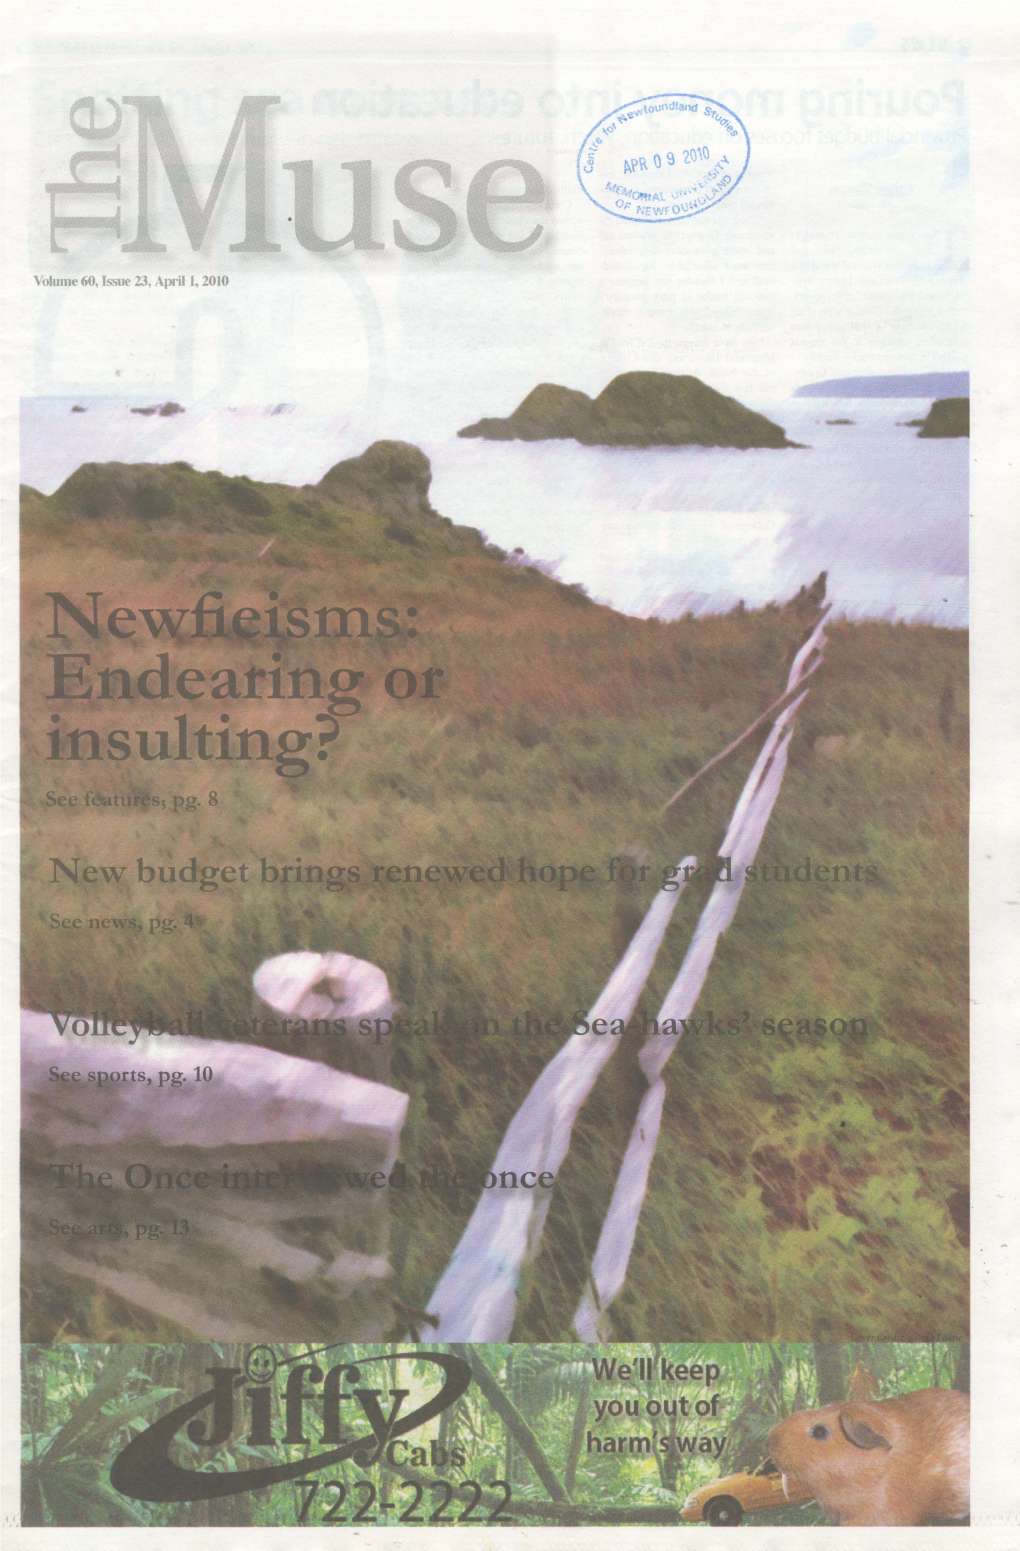 'Voh.Nne 60, Issue 23, Apri.Ll, 2010